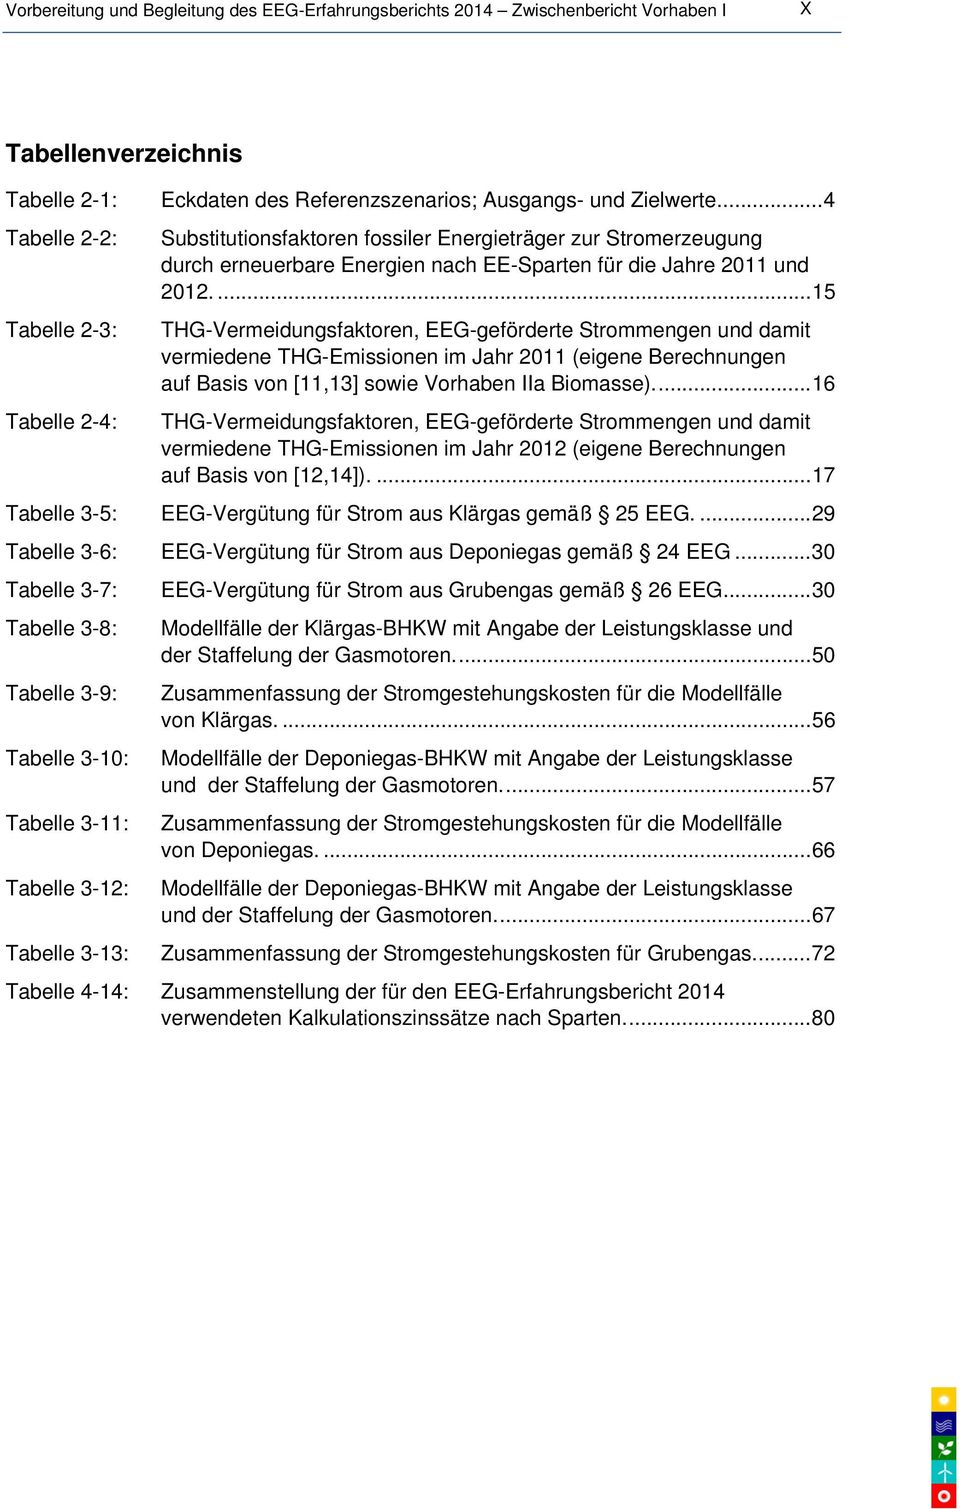 ...15 THG-Vermeidungsfaktoren, EEG-geförderte Strommengen und damit vermiedene THG-Emissionen im Jahr 2011 (eigene Berechnungen auf Basis von [11,13] sowie Vorhaben IIa Biomasse).